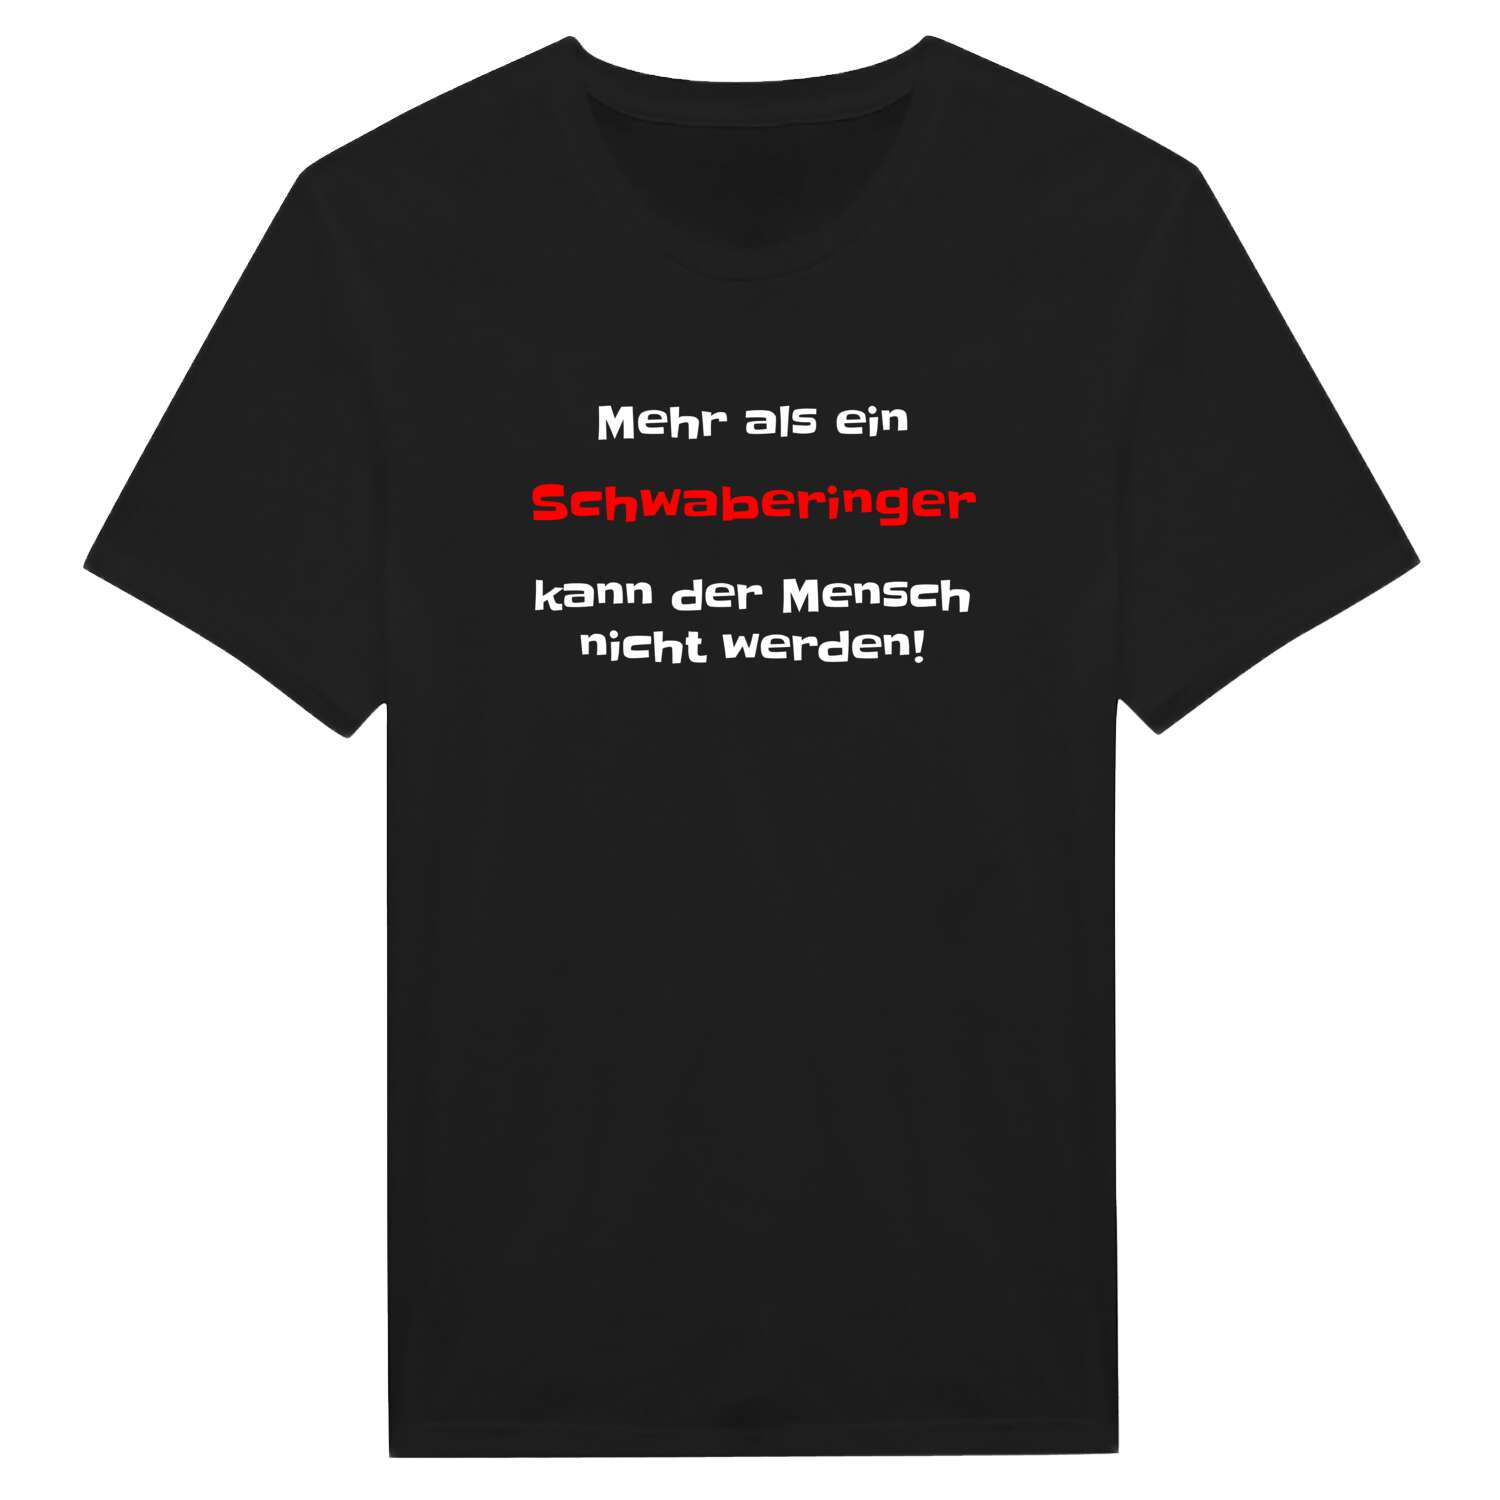 Schwabering T-Shirt »Mehr als ein«